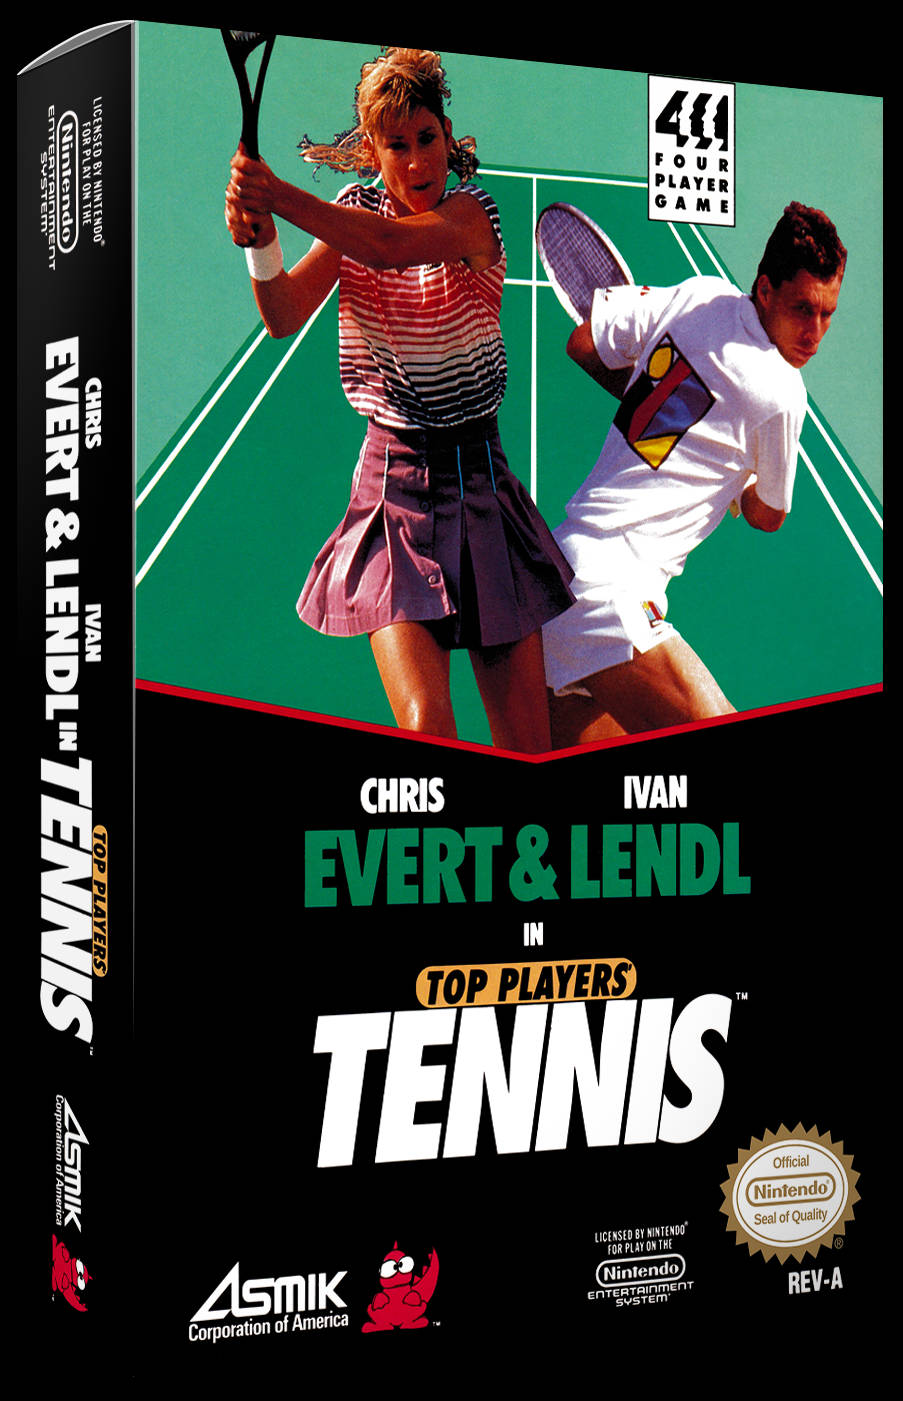 Chrisevert Und Ivan Lendl - Spitzen-tennisspieler Wallpaper